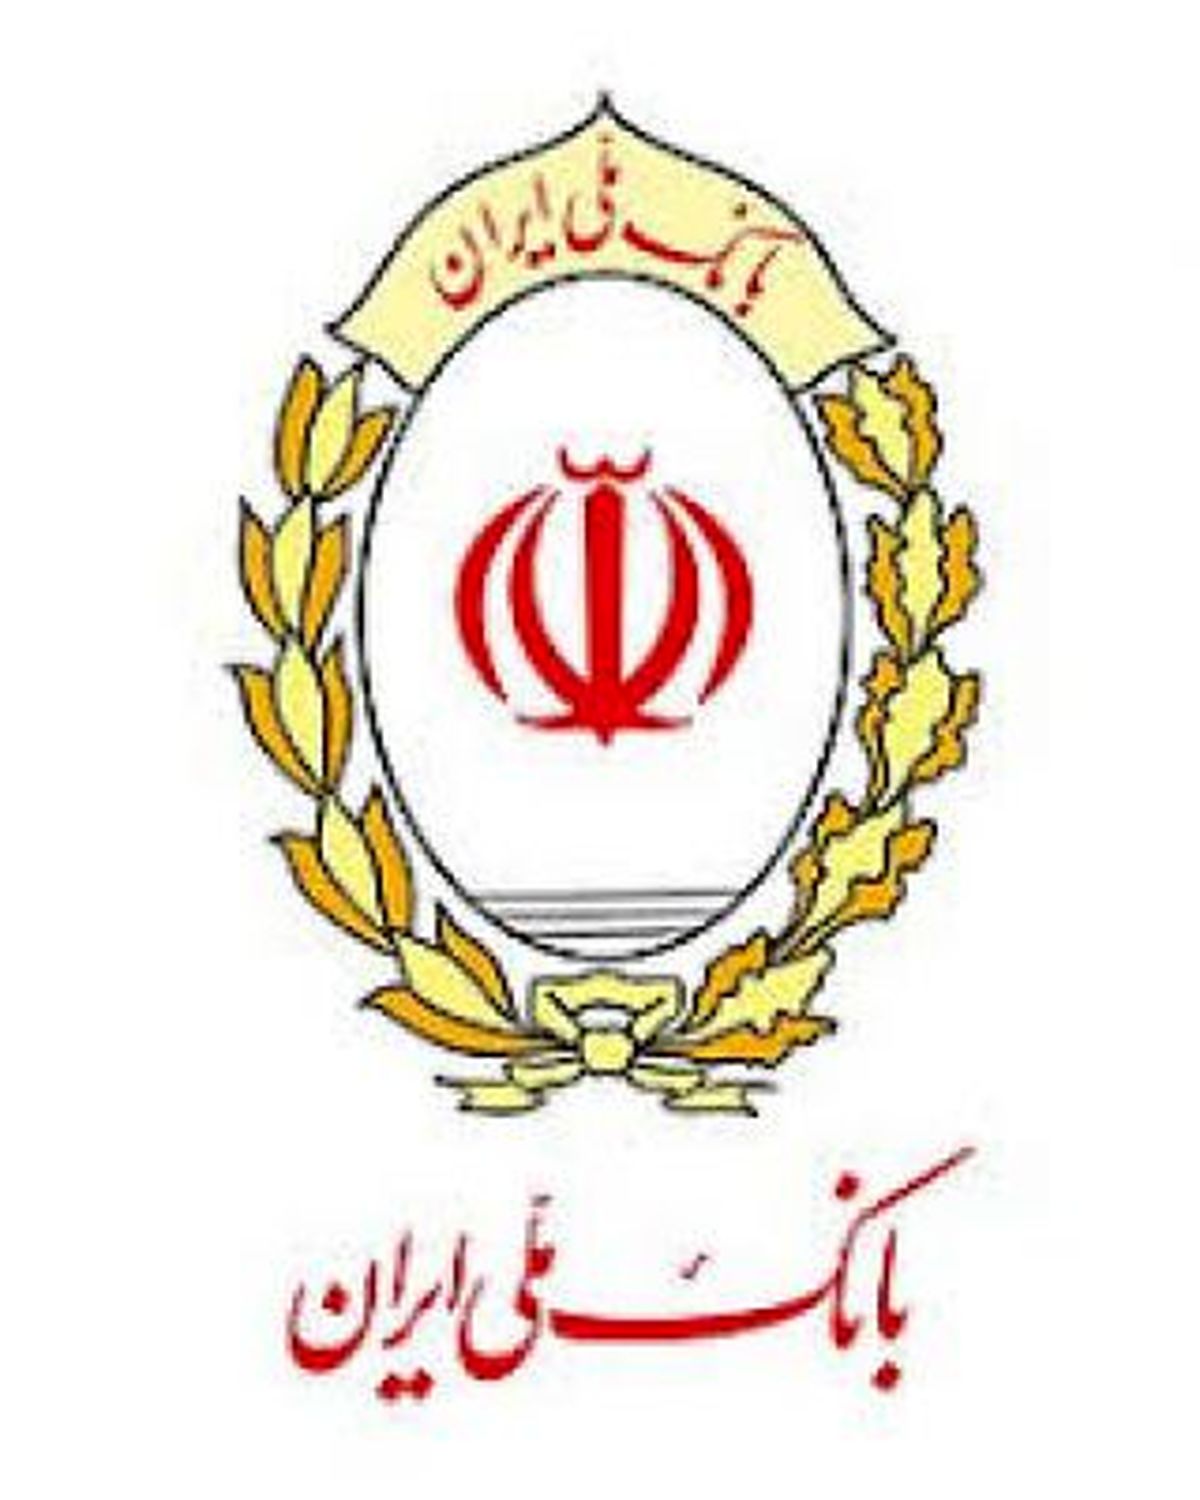 کارنامه مثبت بانک ملی ایران در خروج از بنگاه داری با وجود موانع و محدودیت ها